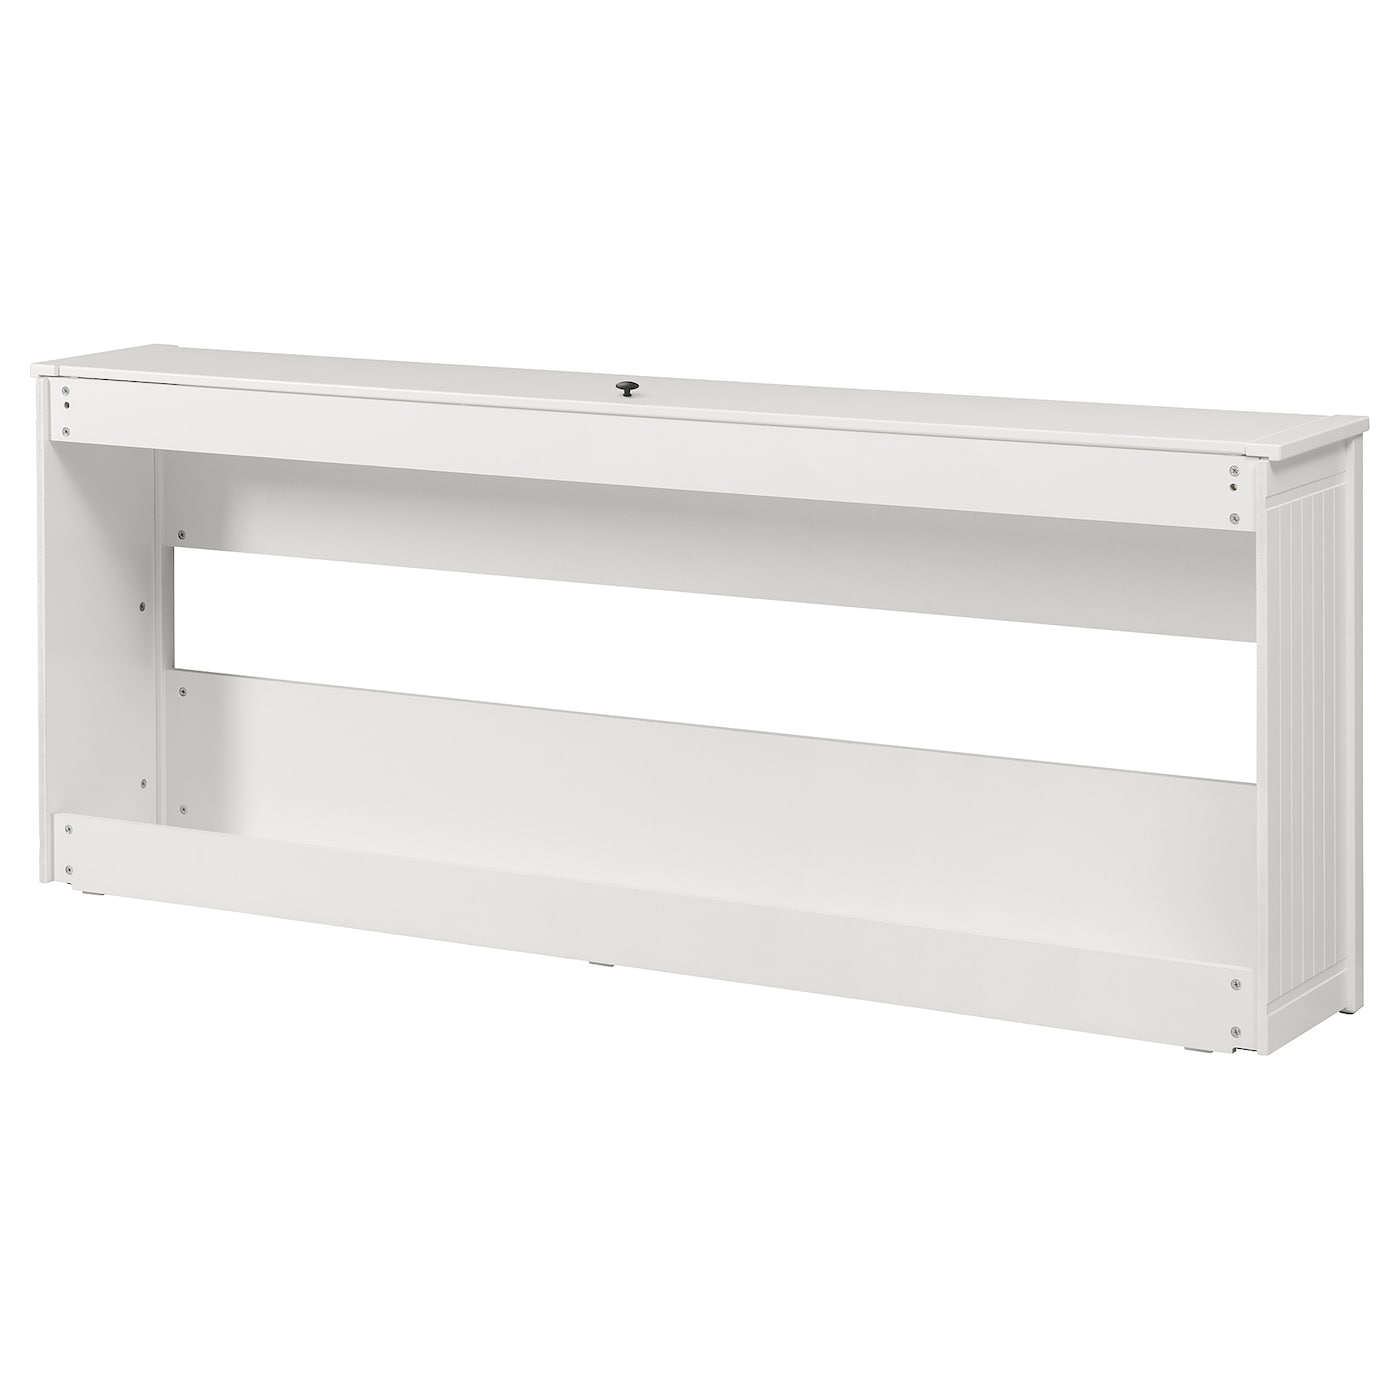 Каркас кровати -  HEMNES IKEA/ ХЕМНЕС ИКЕА, 209х83х33 см, белый